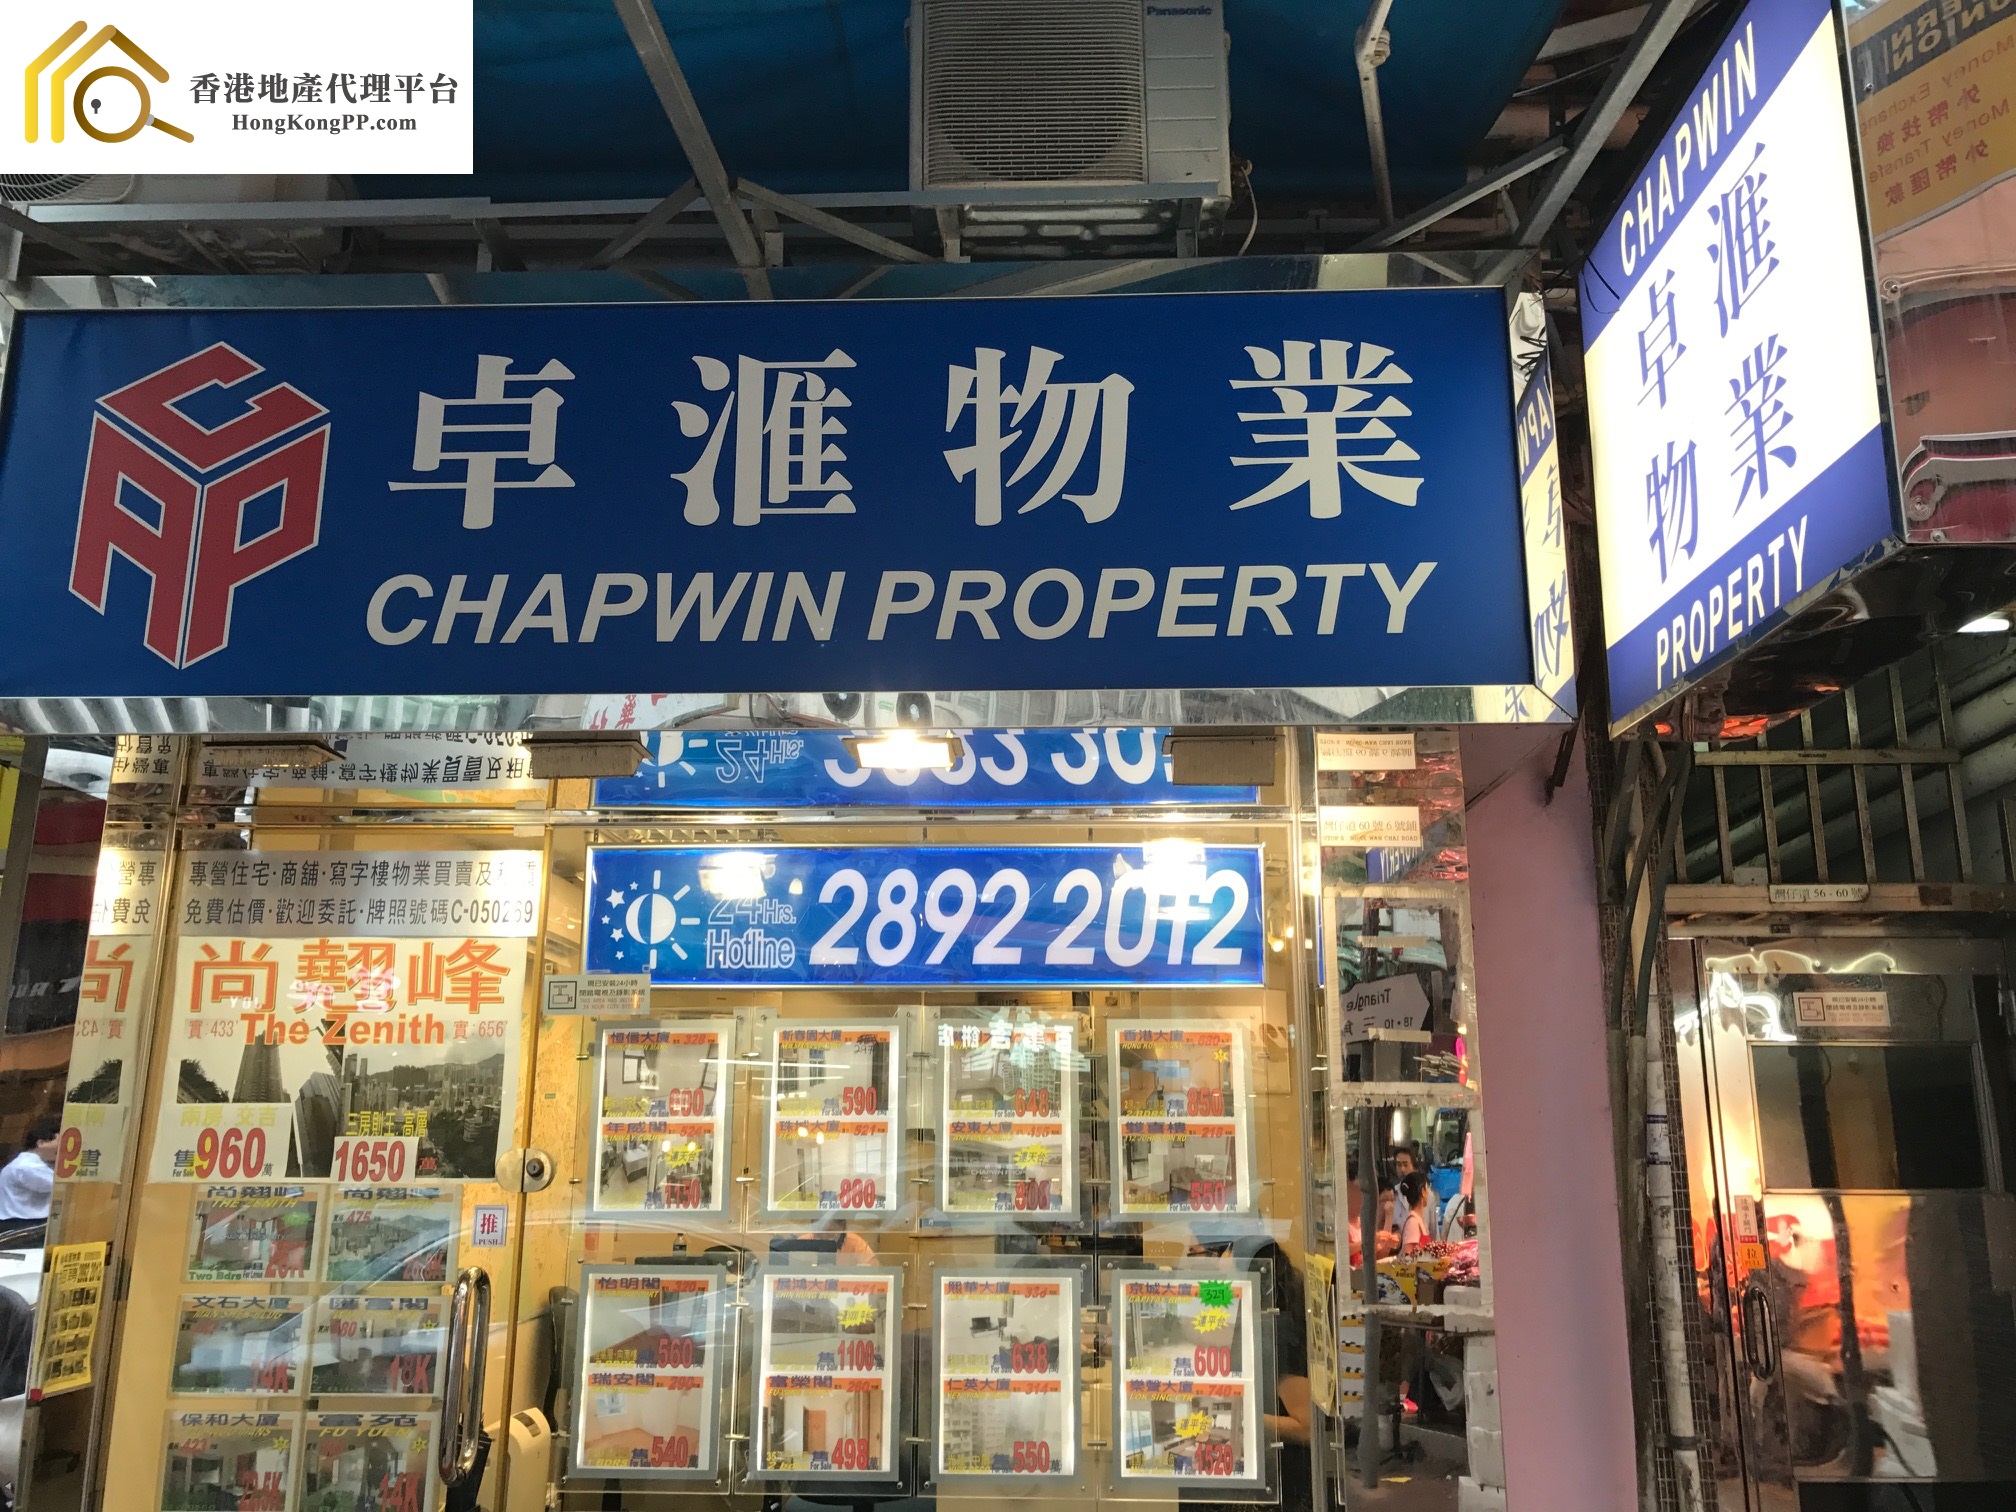 車位地產代理: 卓匯物業 Chapwin Property Agency